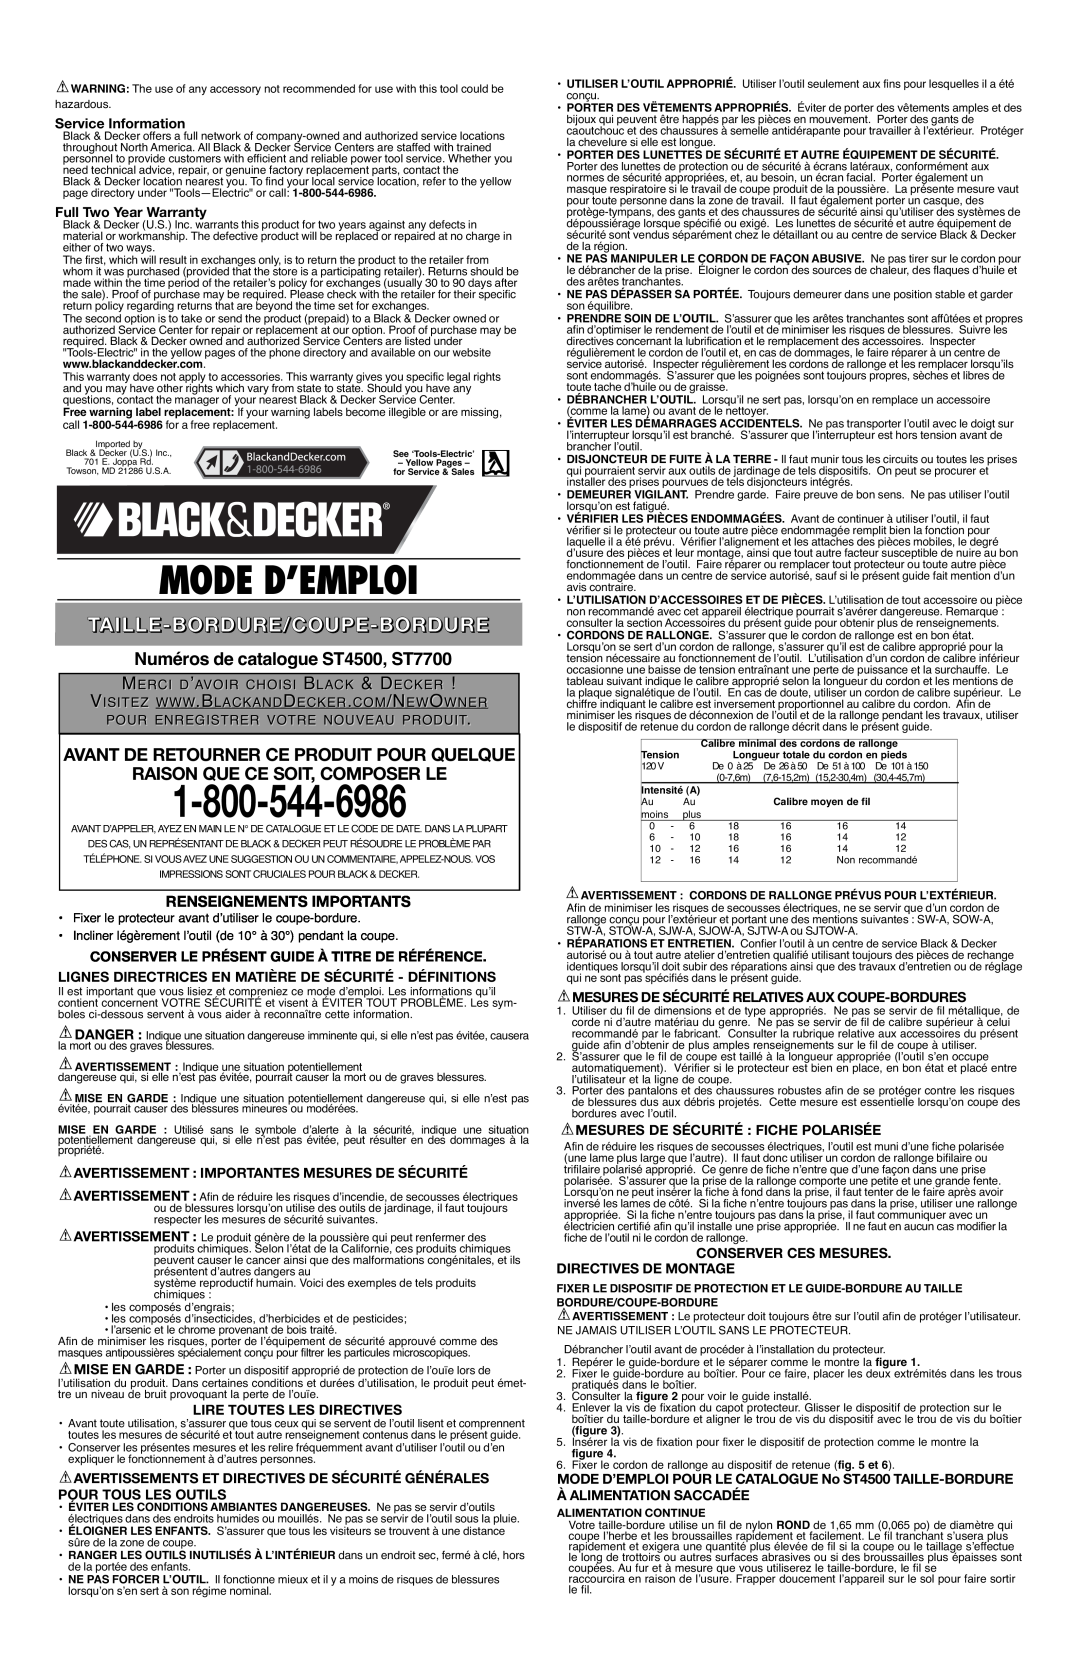 Black & Decker 90508813 Avant De Retourner Ce Produit Pour Quelque, Raison Que Ce Soit, Composer Le, Service Information 